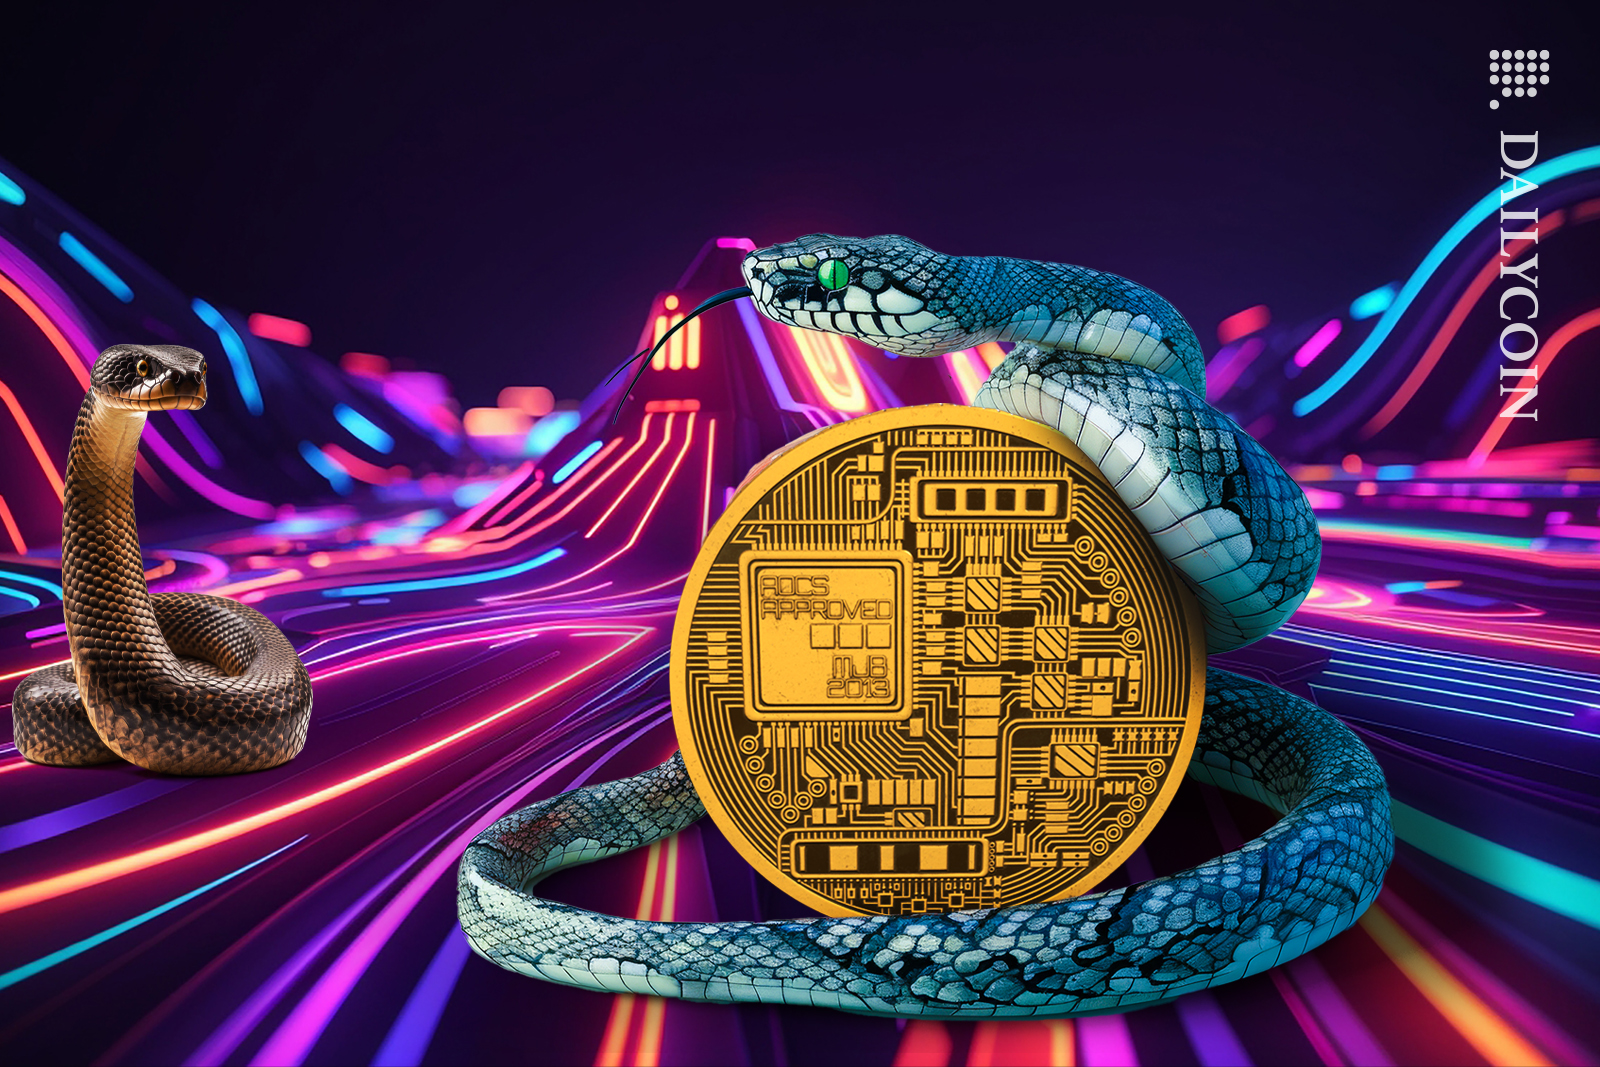 Snake holding a crypto coin.